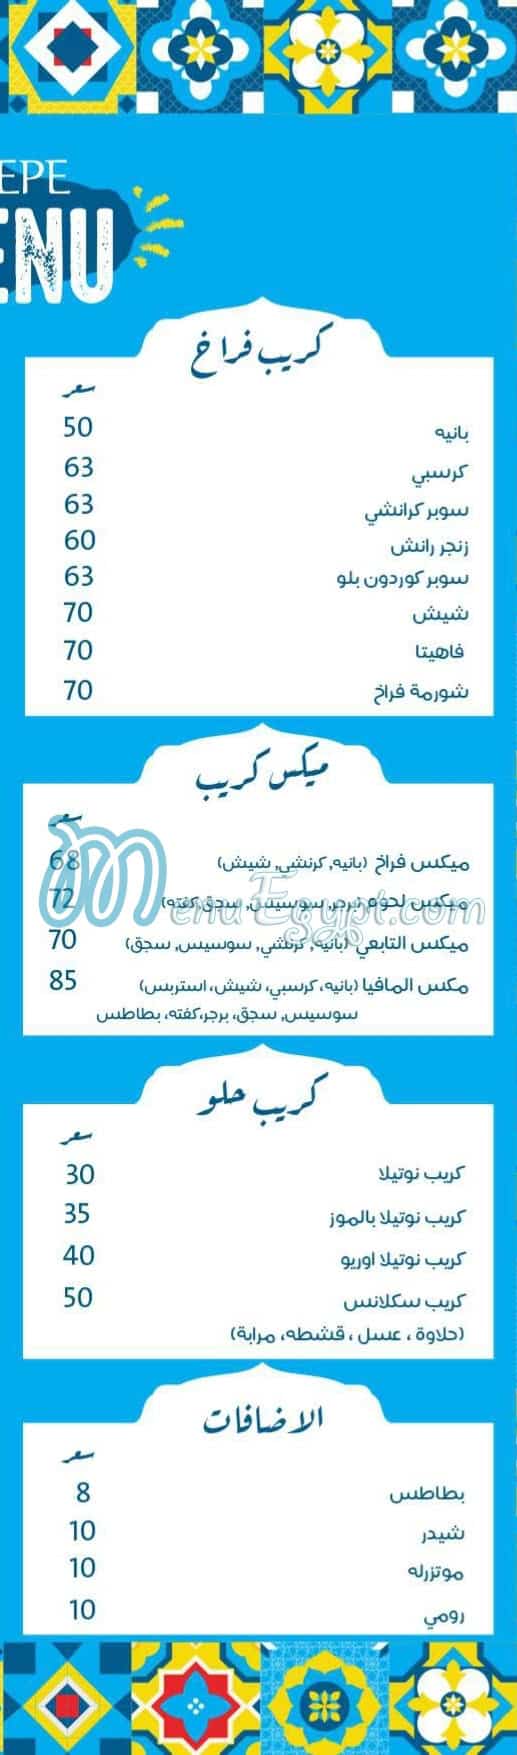 El Tabei El Domyati Zahraa El Maadi online menu